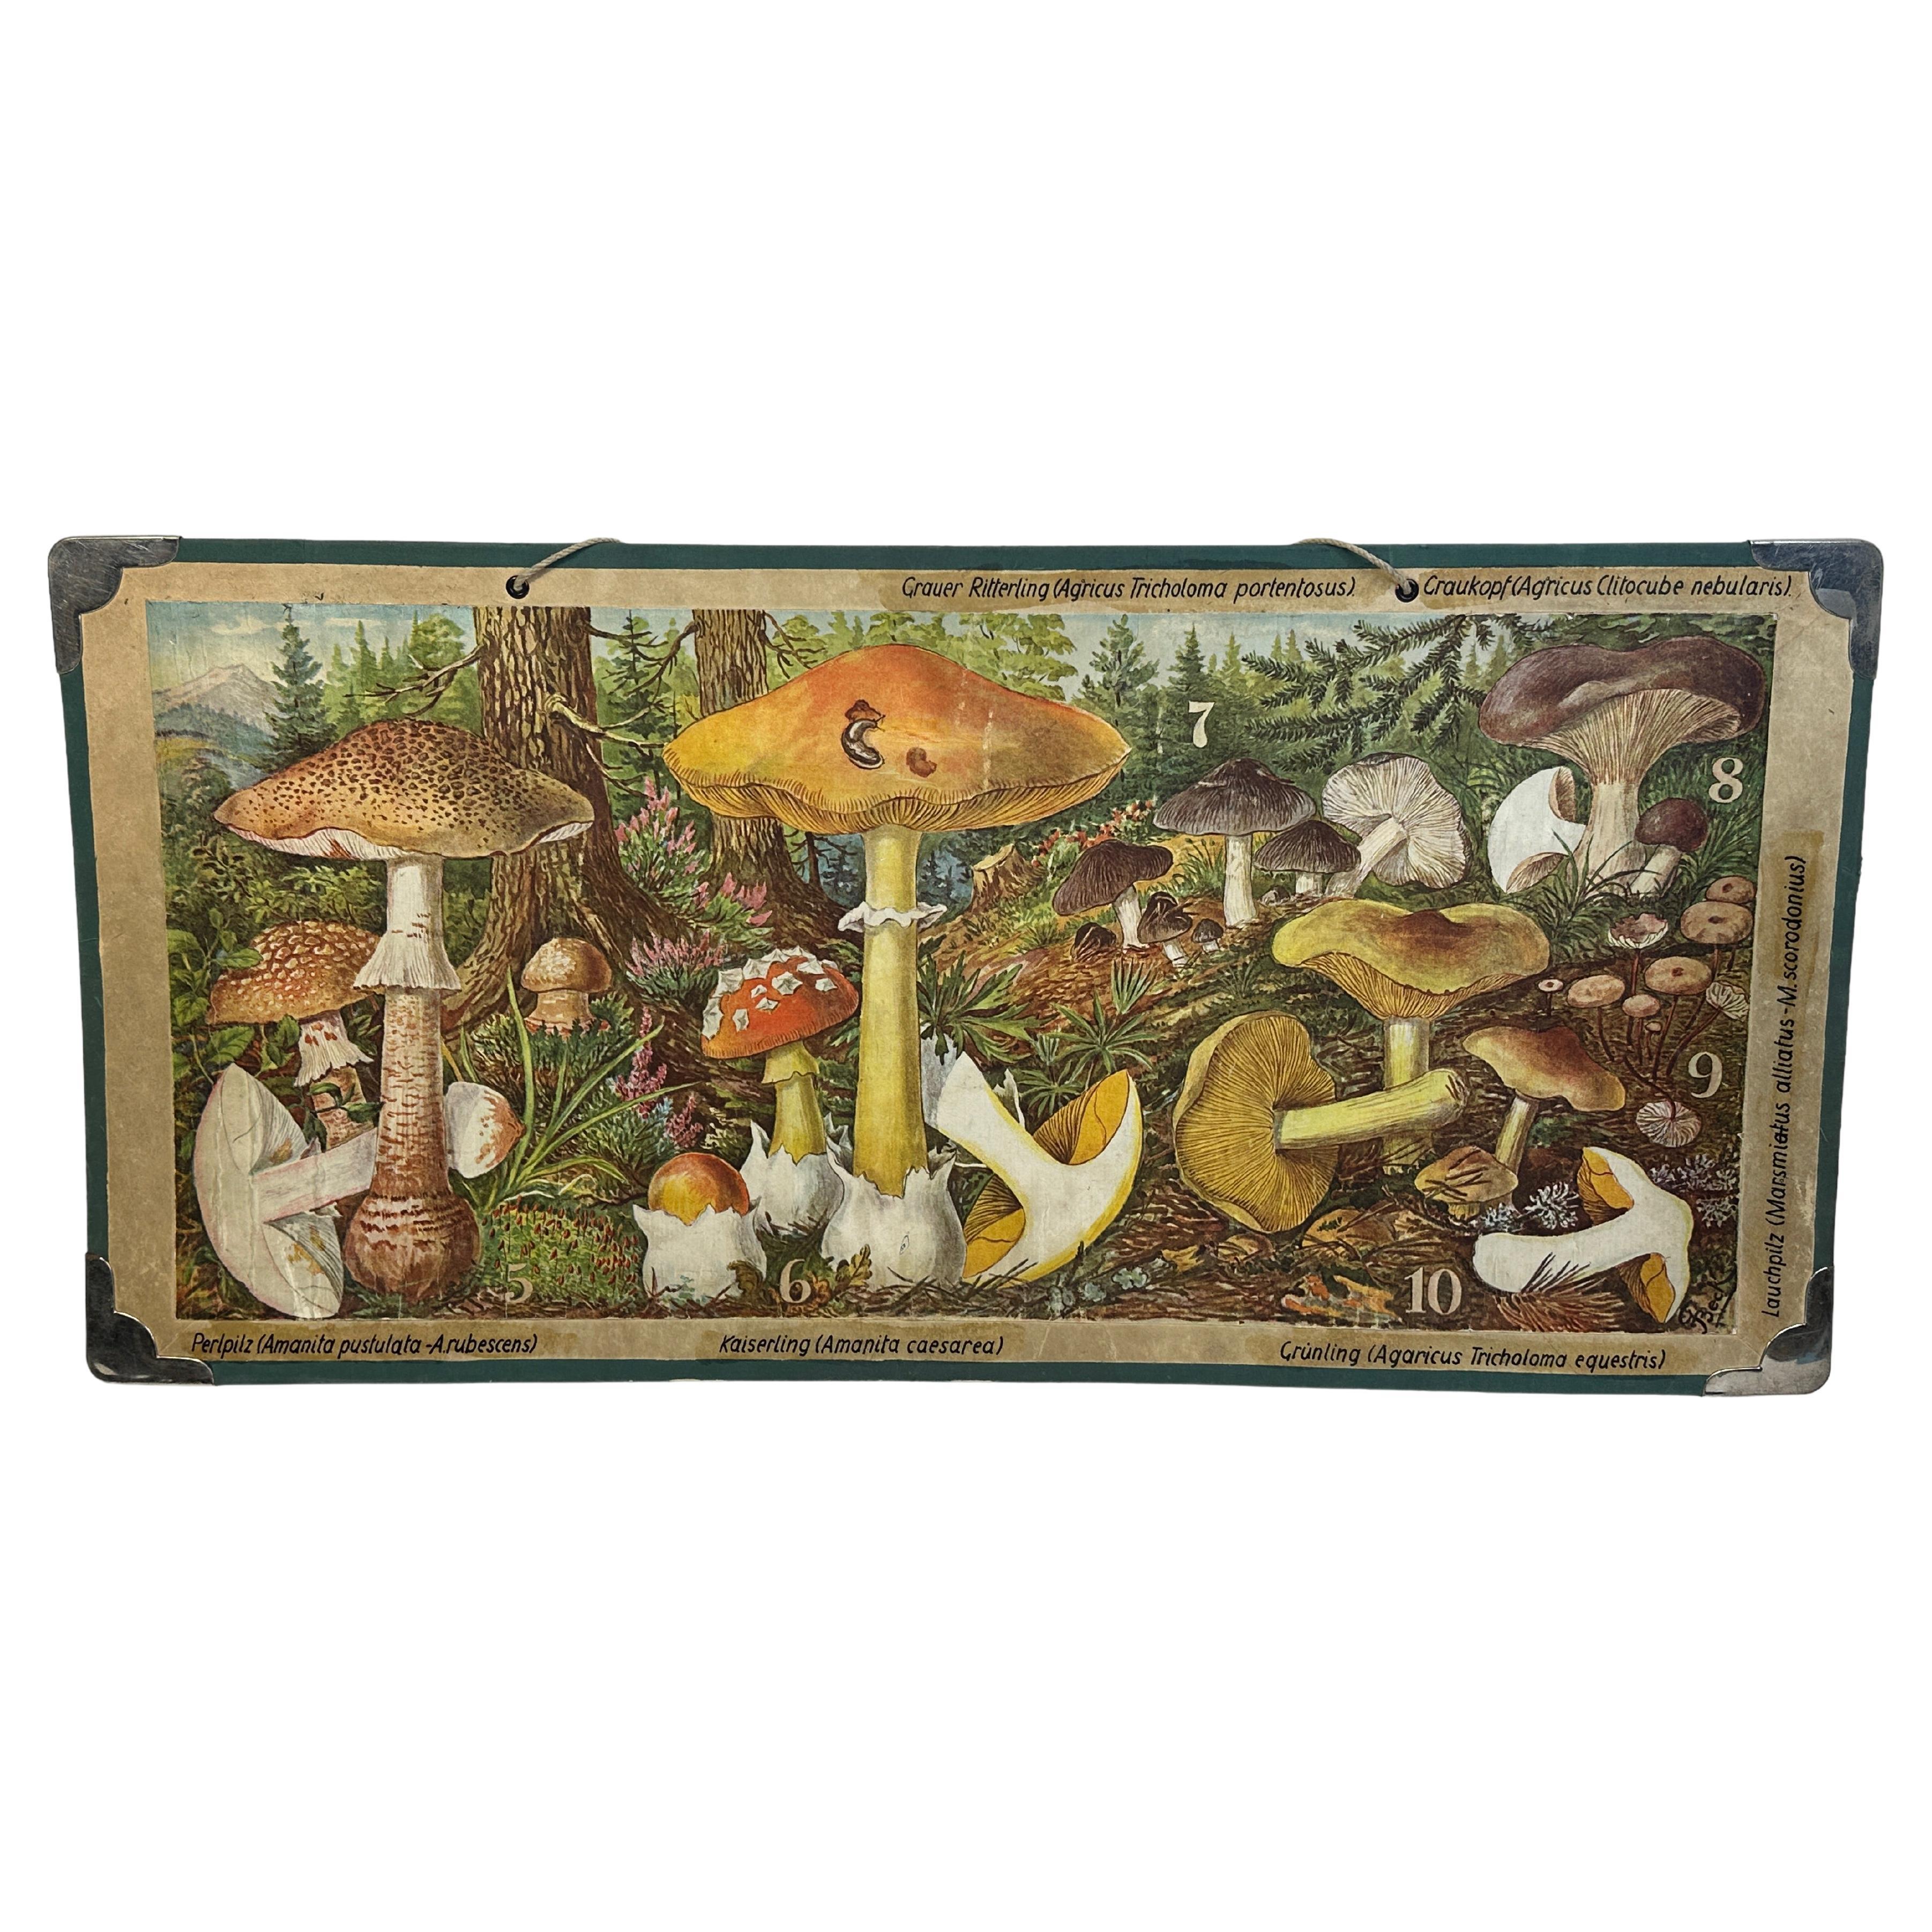 Mushrooms of Middle Europe Druck-Karton-Wandtafel, Deutschland 1930er Jahre